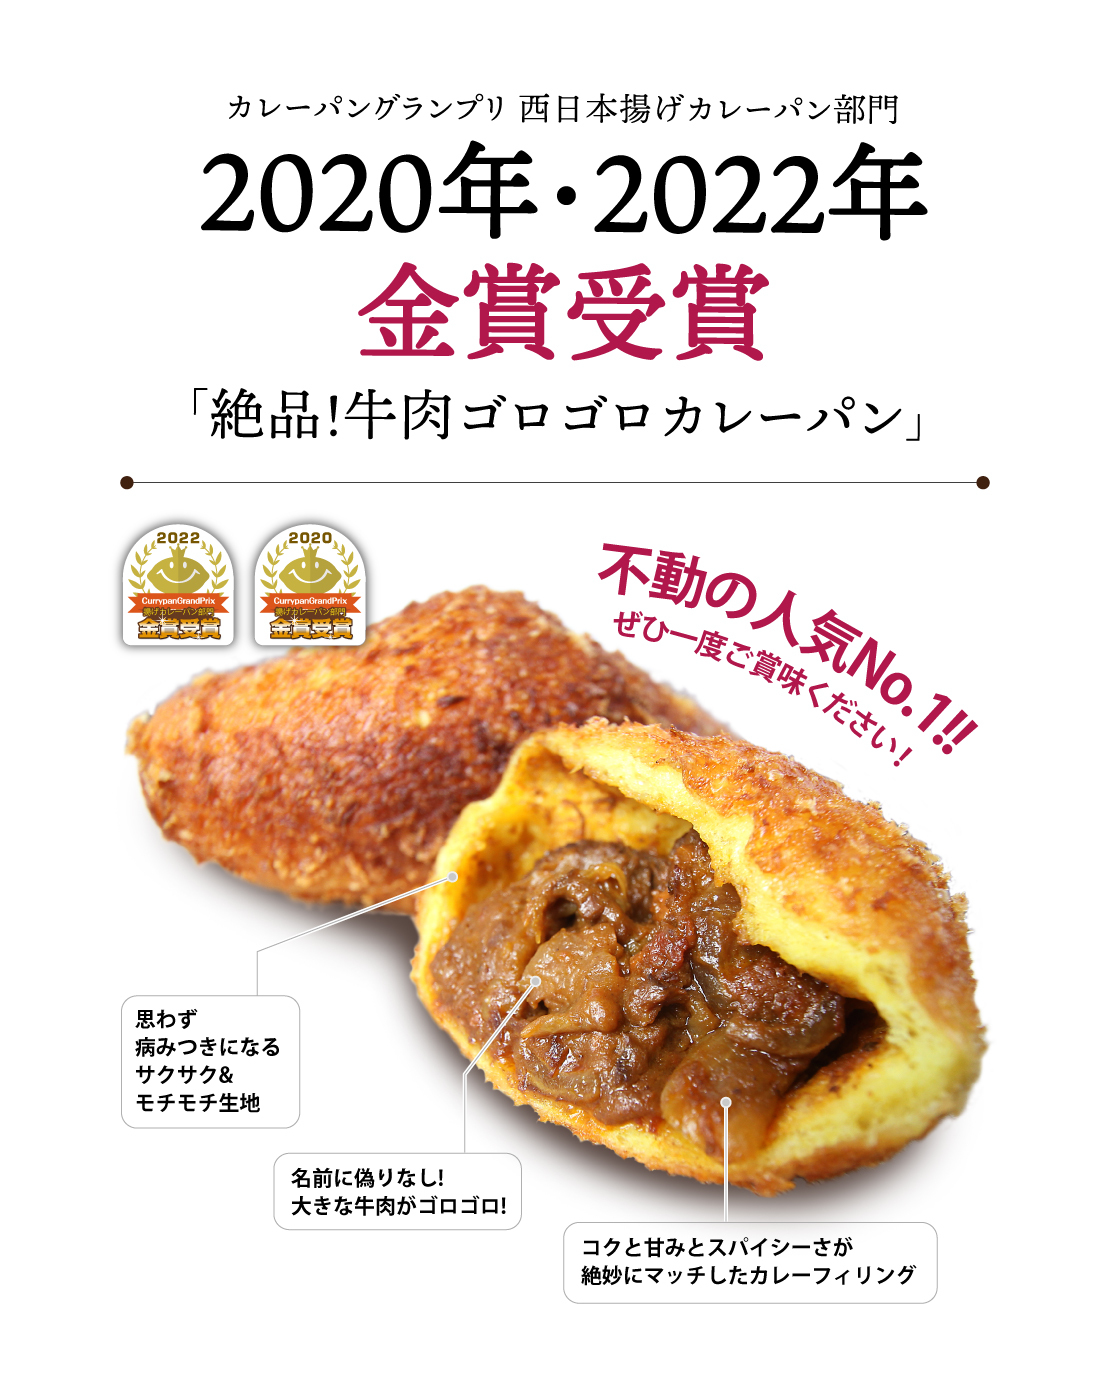 絶品!牛肉ゴロゴロカレーパン2020年_2022年金賞受賞